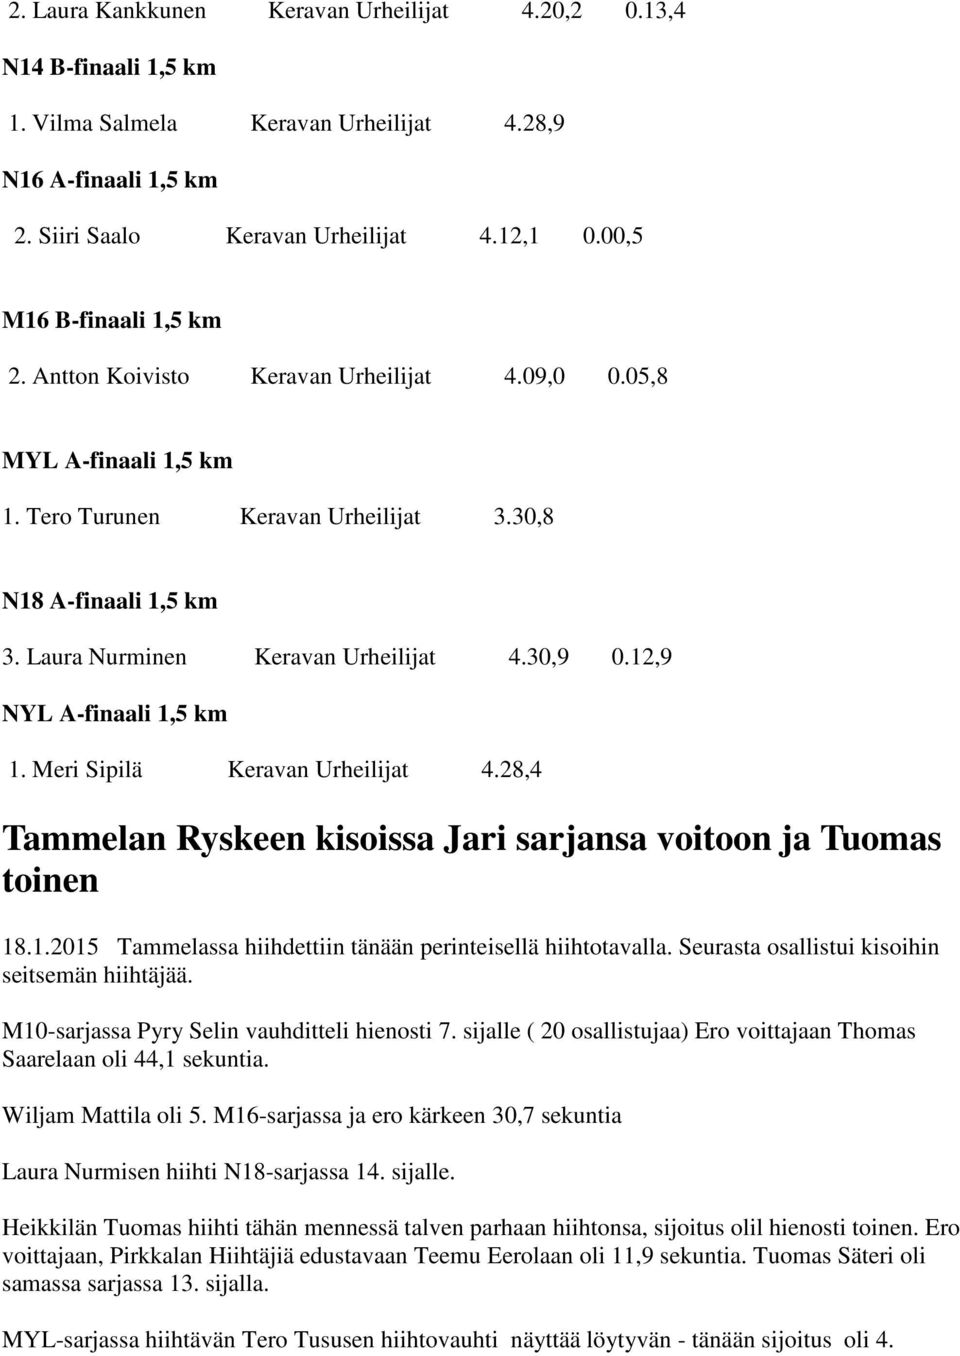 Laura Nurminen Keravan Urheilijat 4.30,9 0.12,9 NYL A-finaali 1,5 km 1. Meri Sipilä Keravan Urheilijat 4.28,4 Tammelan Ryskeen kisoissa Jari sarjansa voitoon ja Tuomas toinen 18.1.2015 Tammelassa hiihdettiin tänään perinteisellä hiihtotavalla.